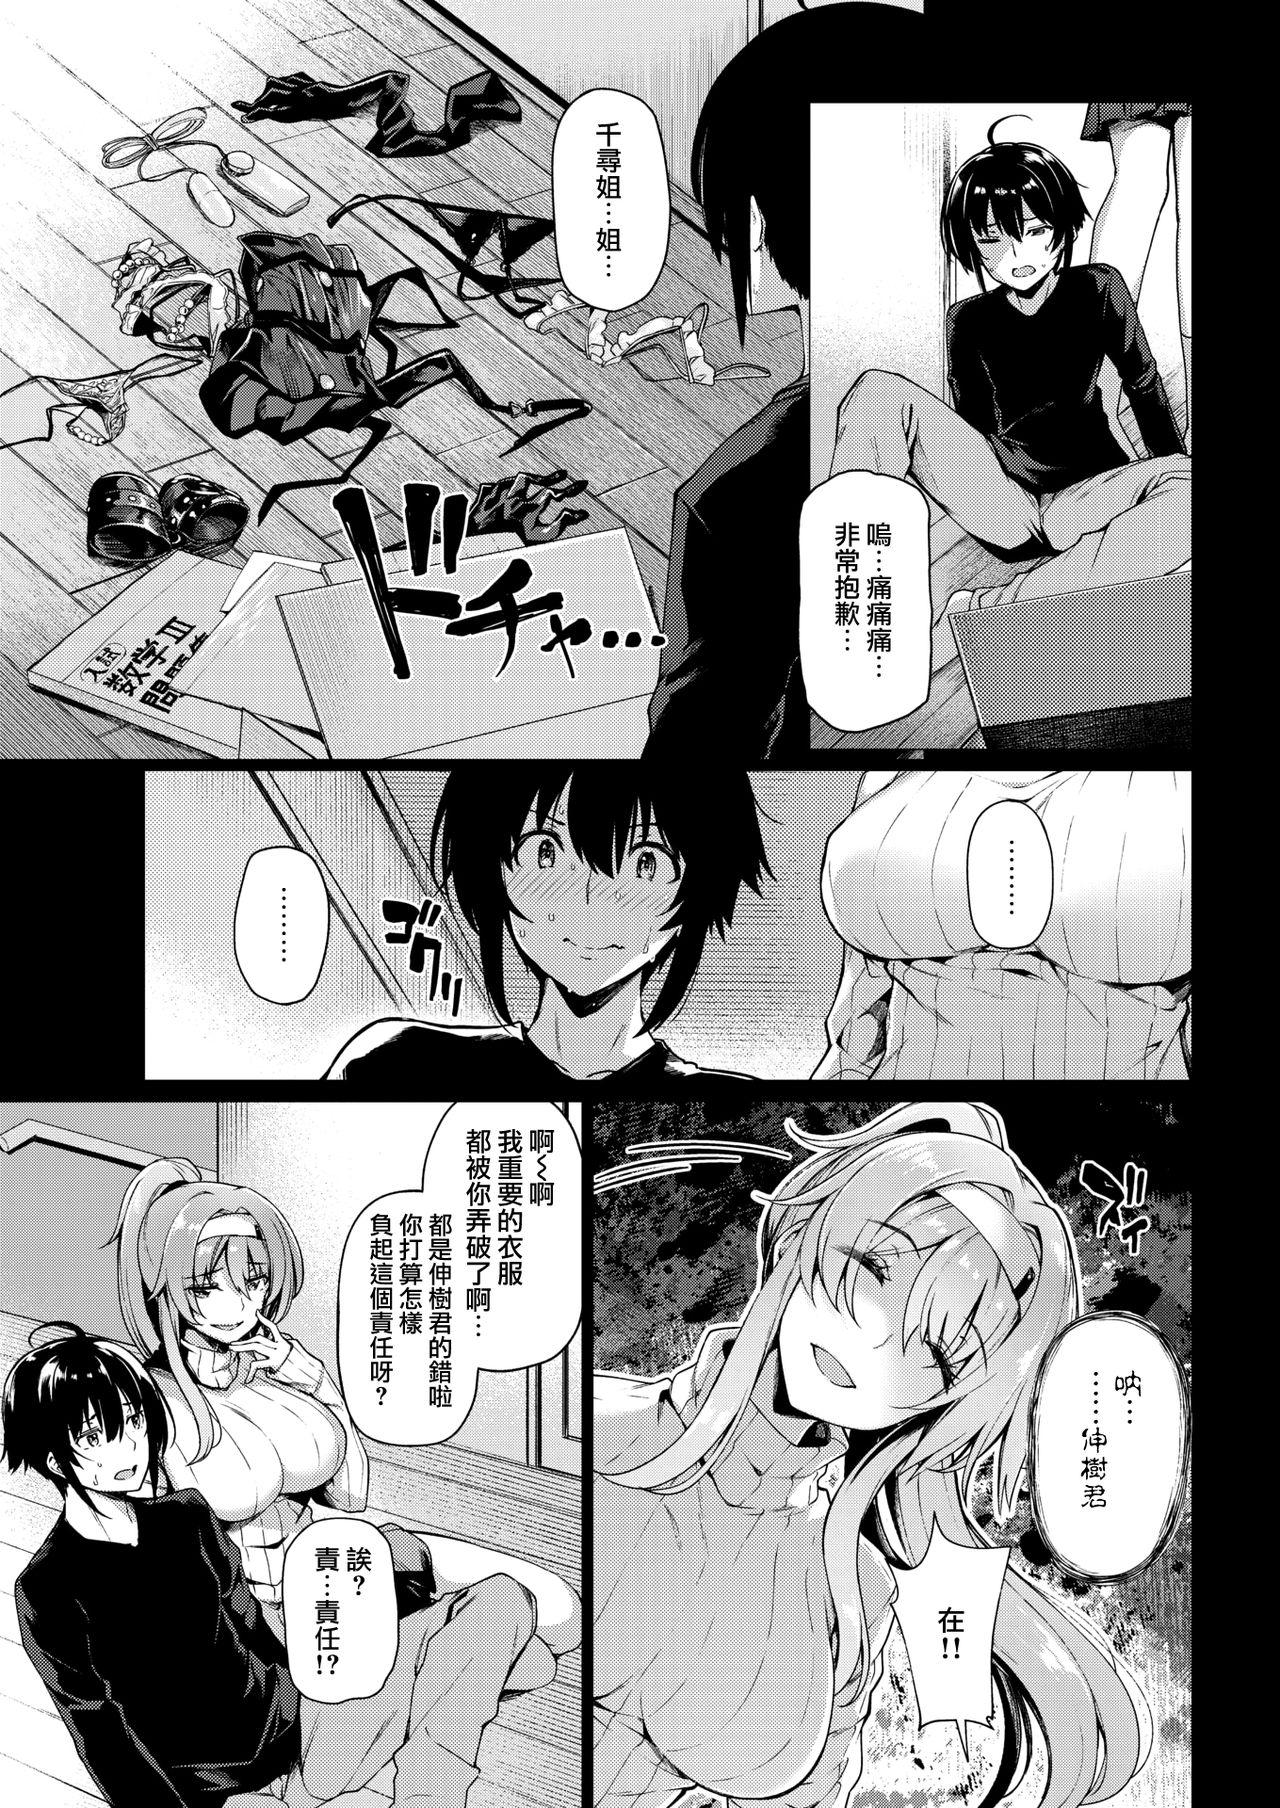 Sentando Onee-sama no Toriko Negra - Page 4